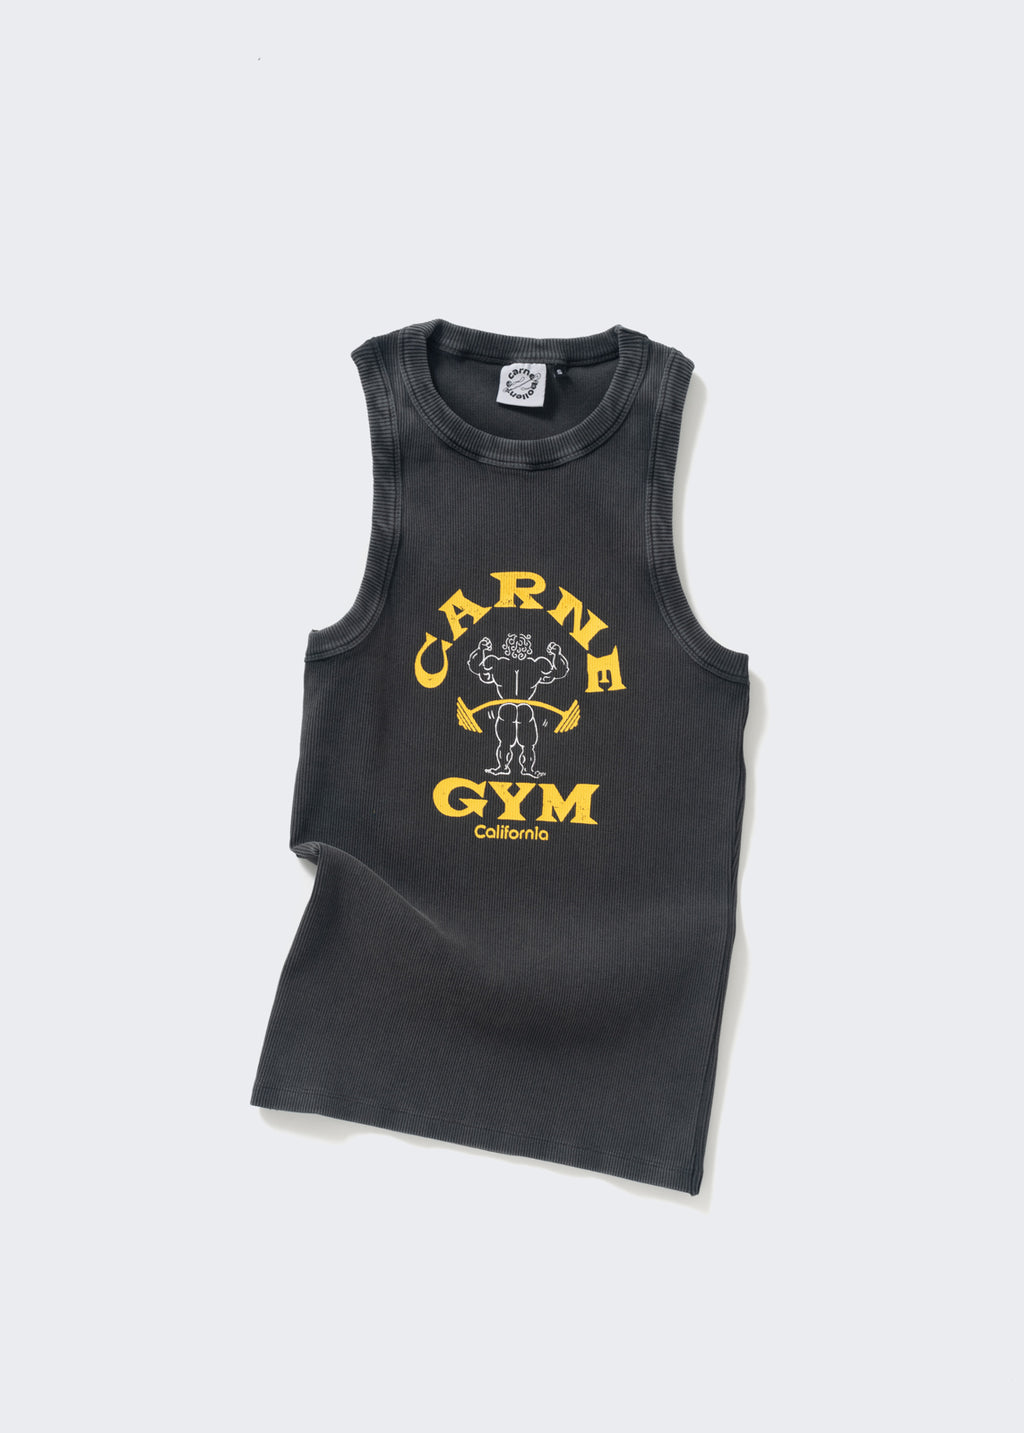 Carne Gym Tank - Washed Black